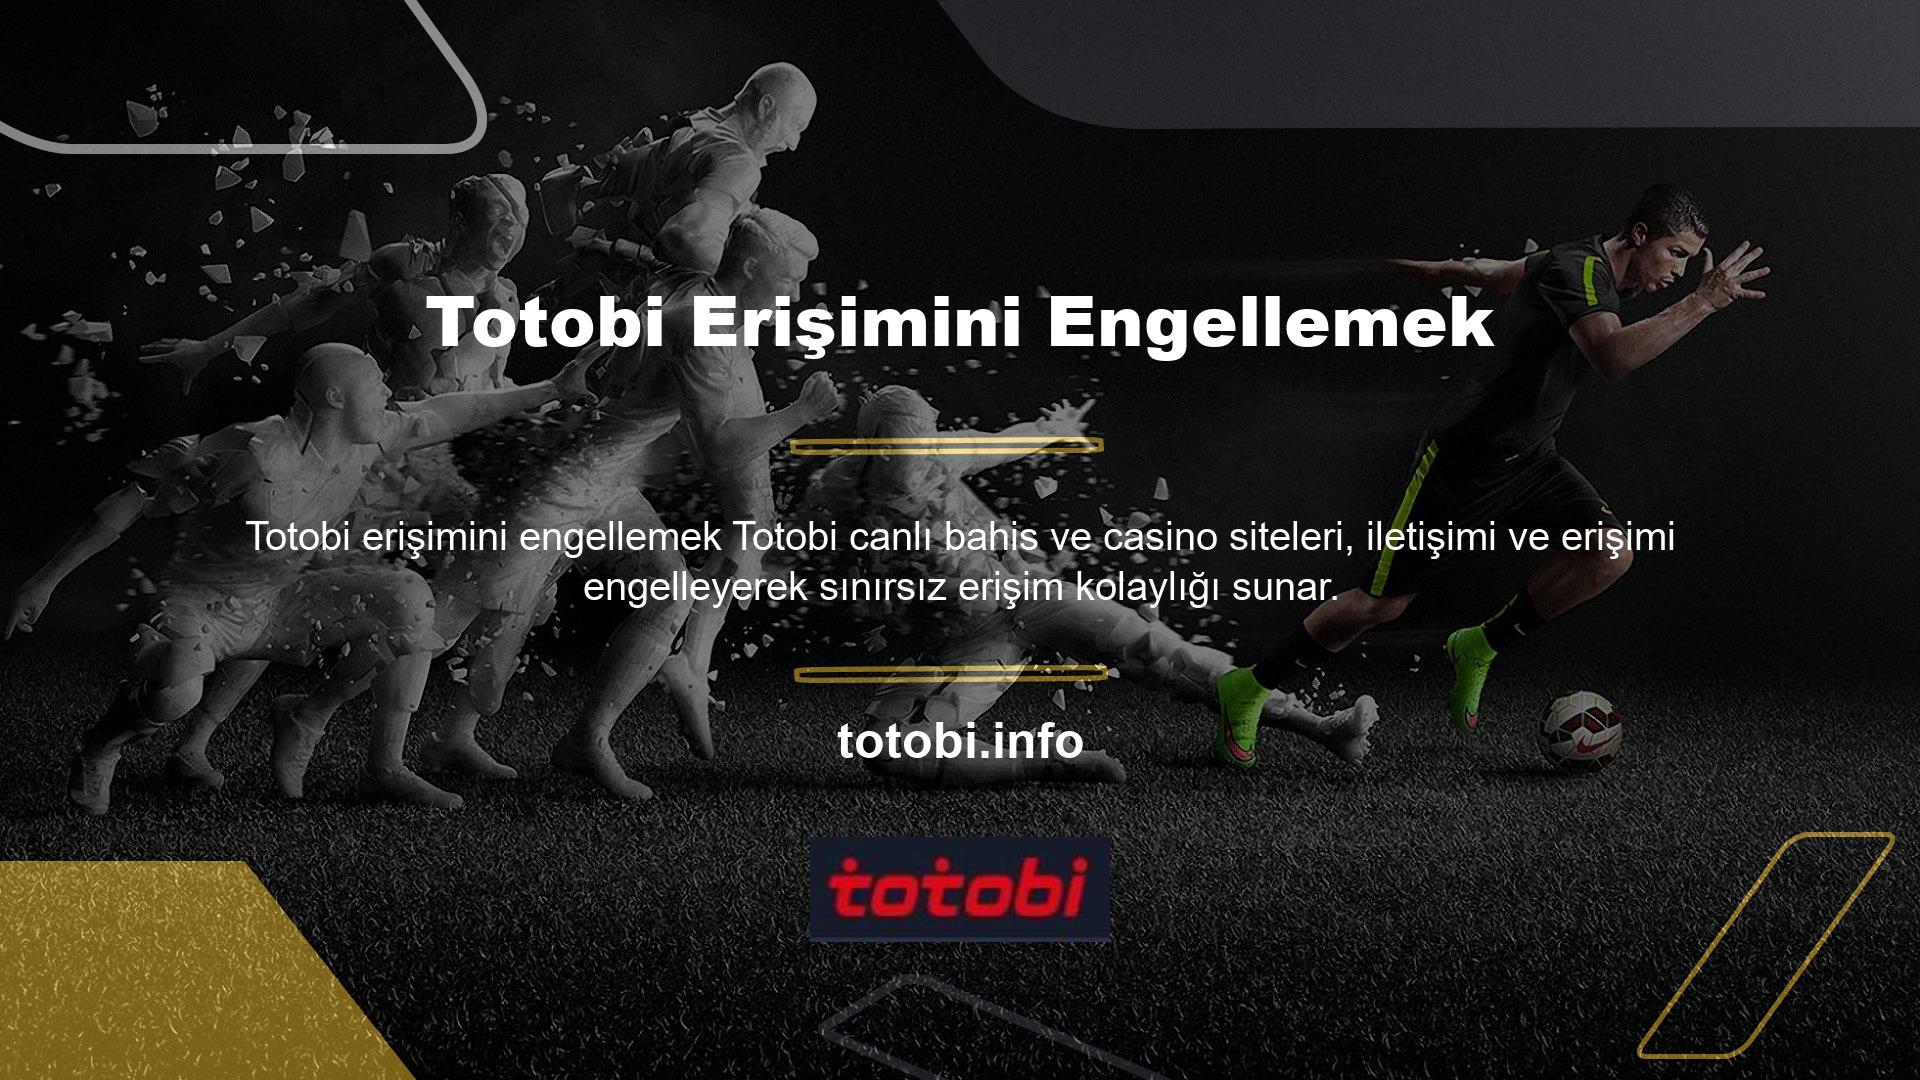 Spor bahisleri ve canlı bahis kampanyaları hem Totobi TV üzerinden hem de ana sayfa üzerinden takip edilebilir